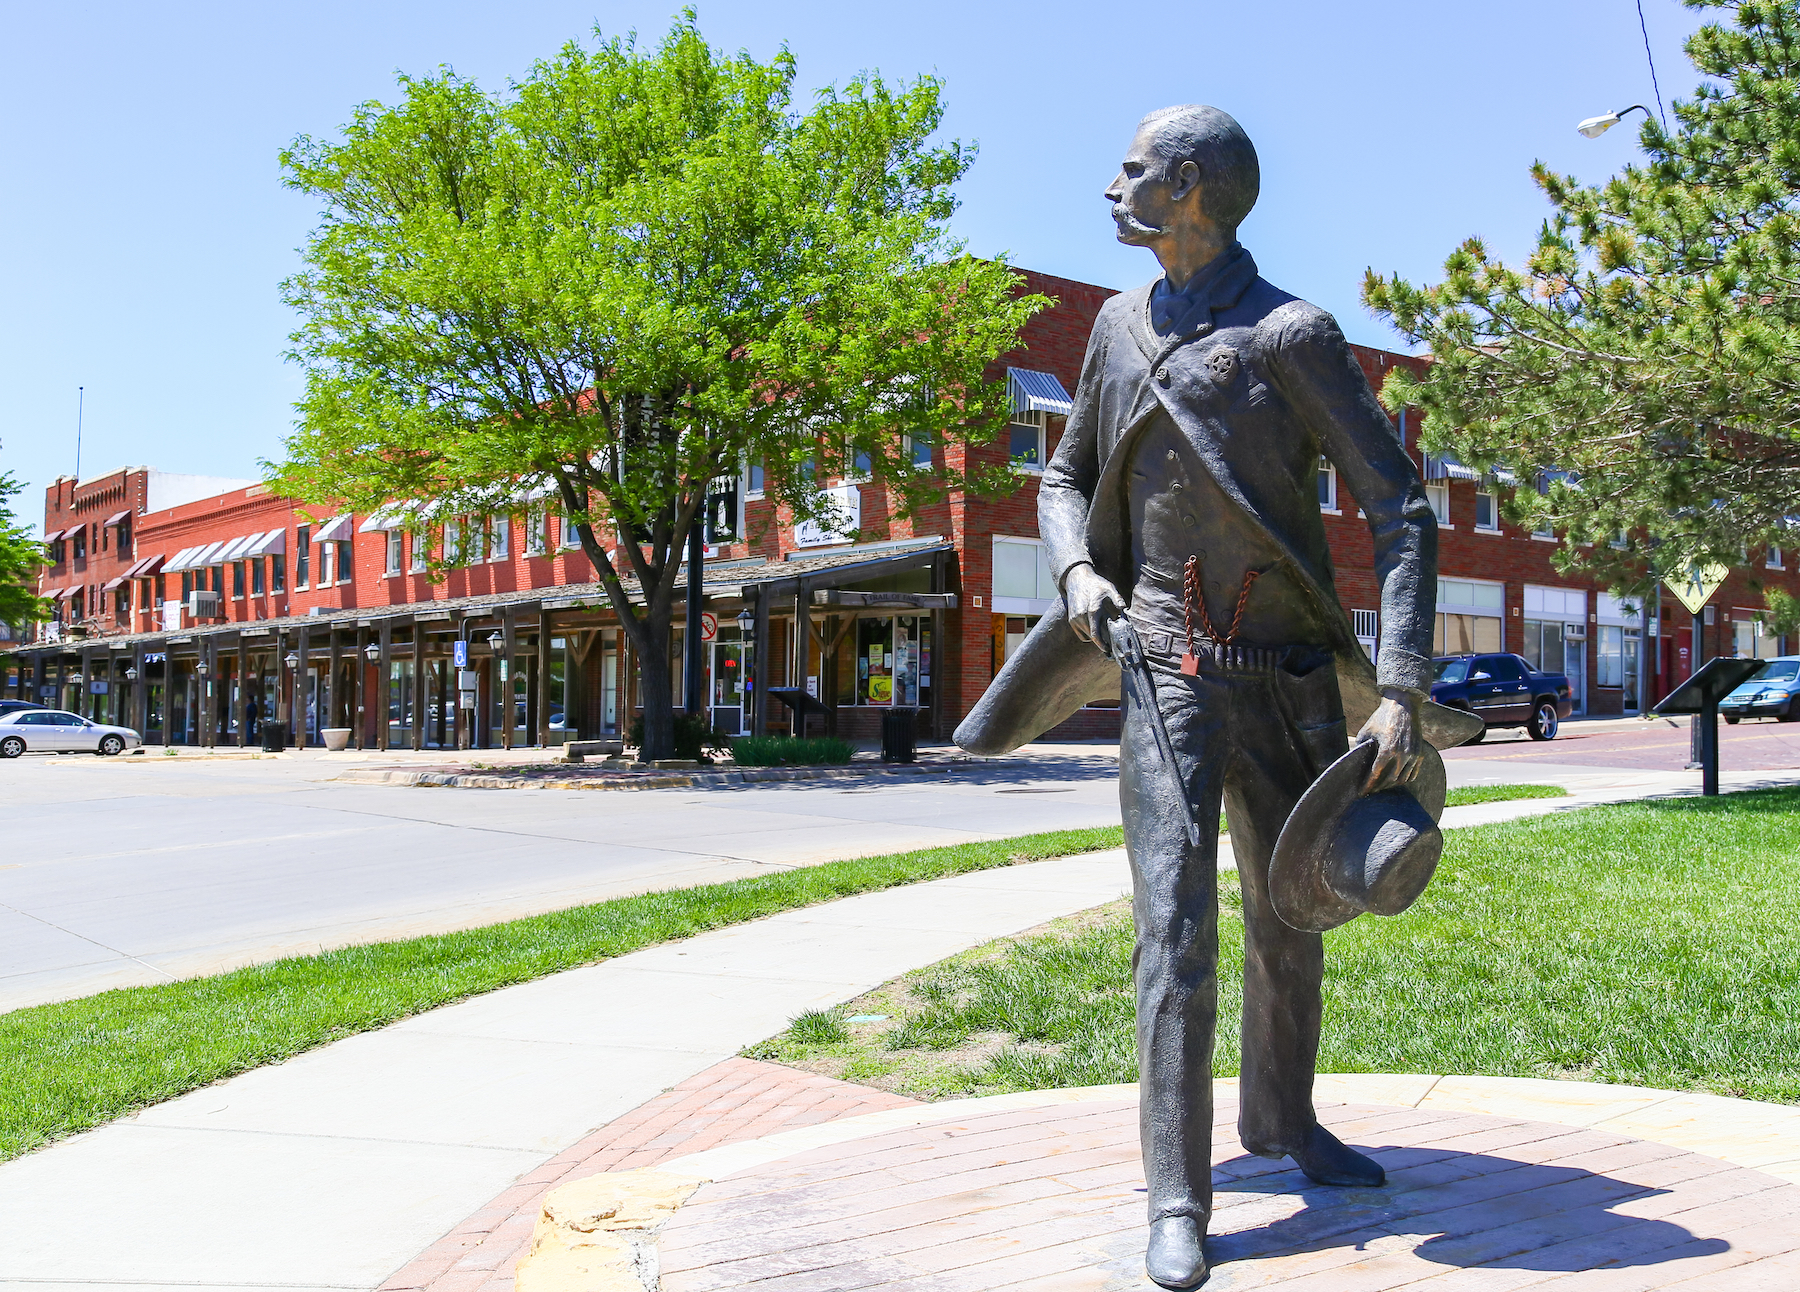 A los fanáticos de Westerns les encantará Dodge City, que celebra con orgullo su conexión con el Salvaje Oeste, desde sus rebaños de Longhorns hasta sus tiroteos en la antigua calle principal. - 43